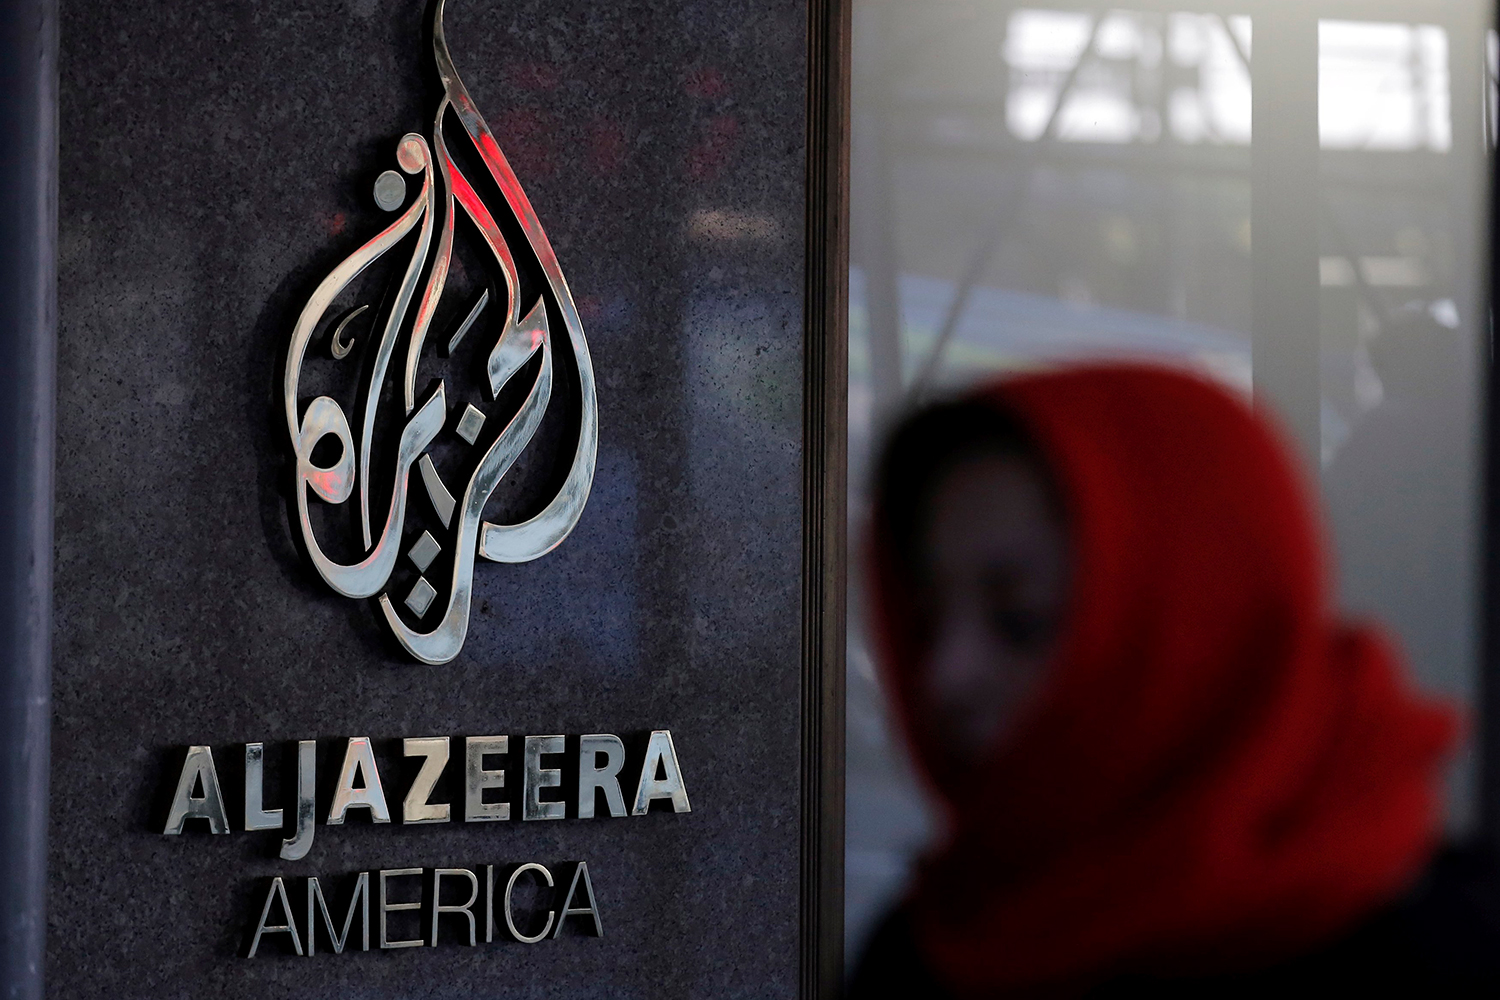 Al Jazeera America anuncia su cierre a finales de abril